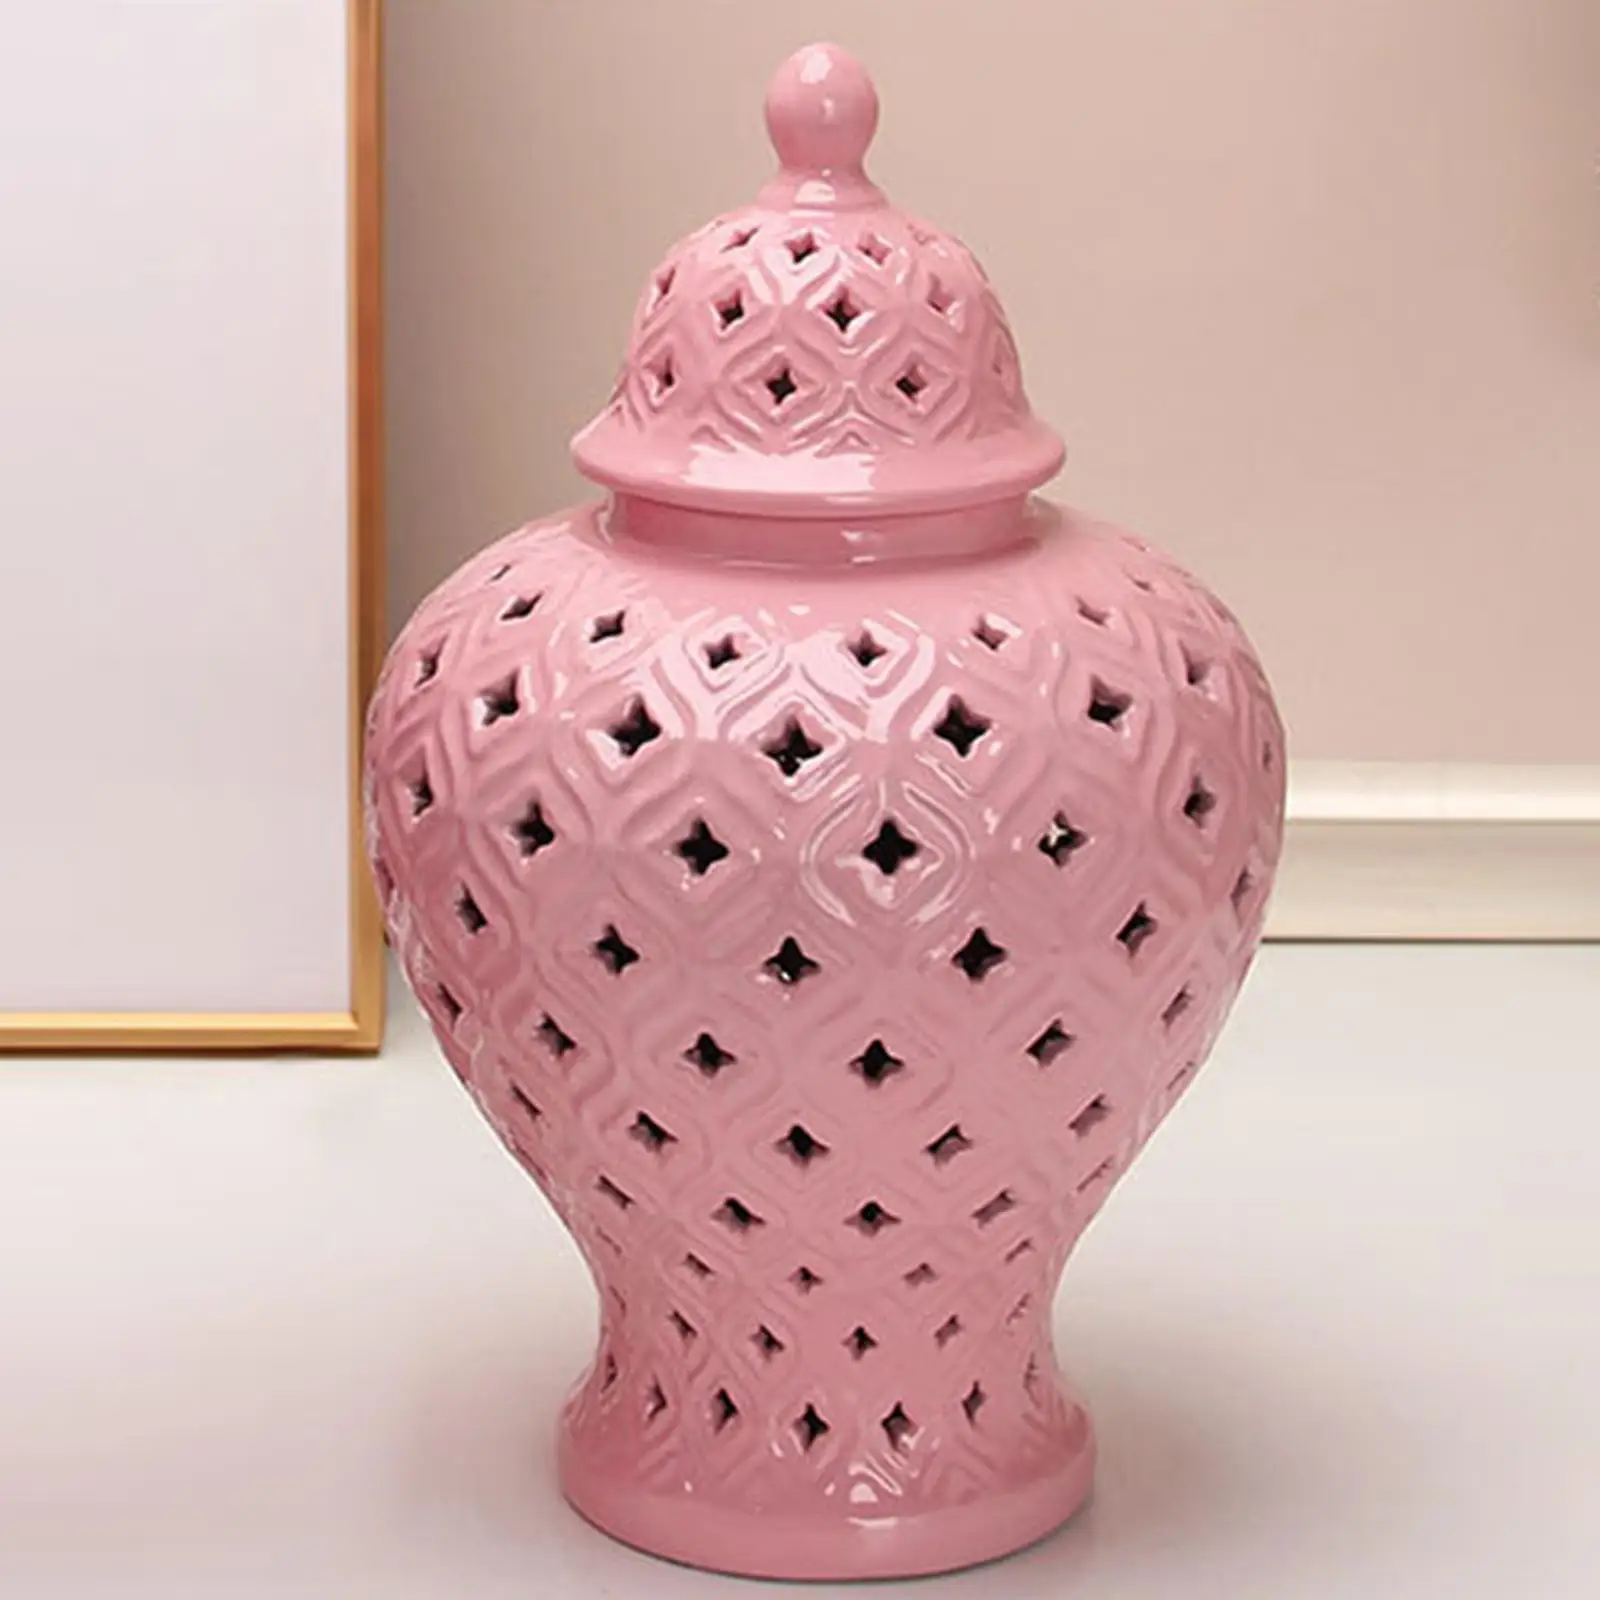 Traditional Ceramic Ginger Jar Flower Vase Storage Jar with Lid Floral Arrangement for Party Wedding Decoration Gift Collection